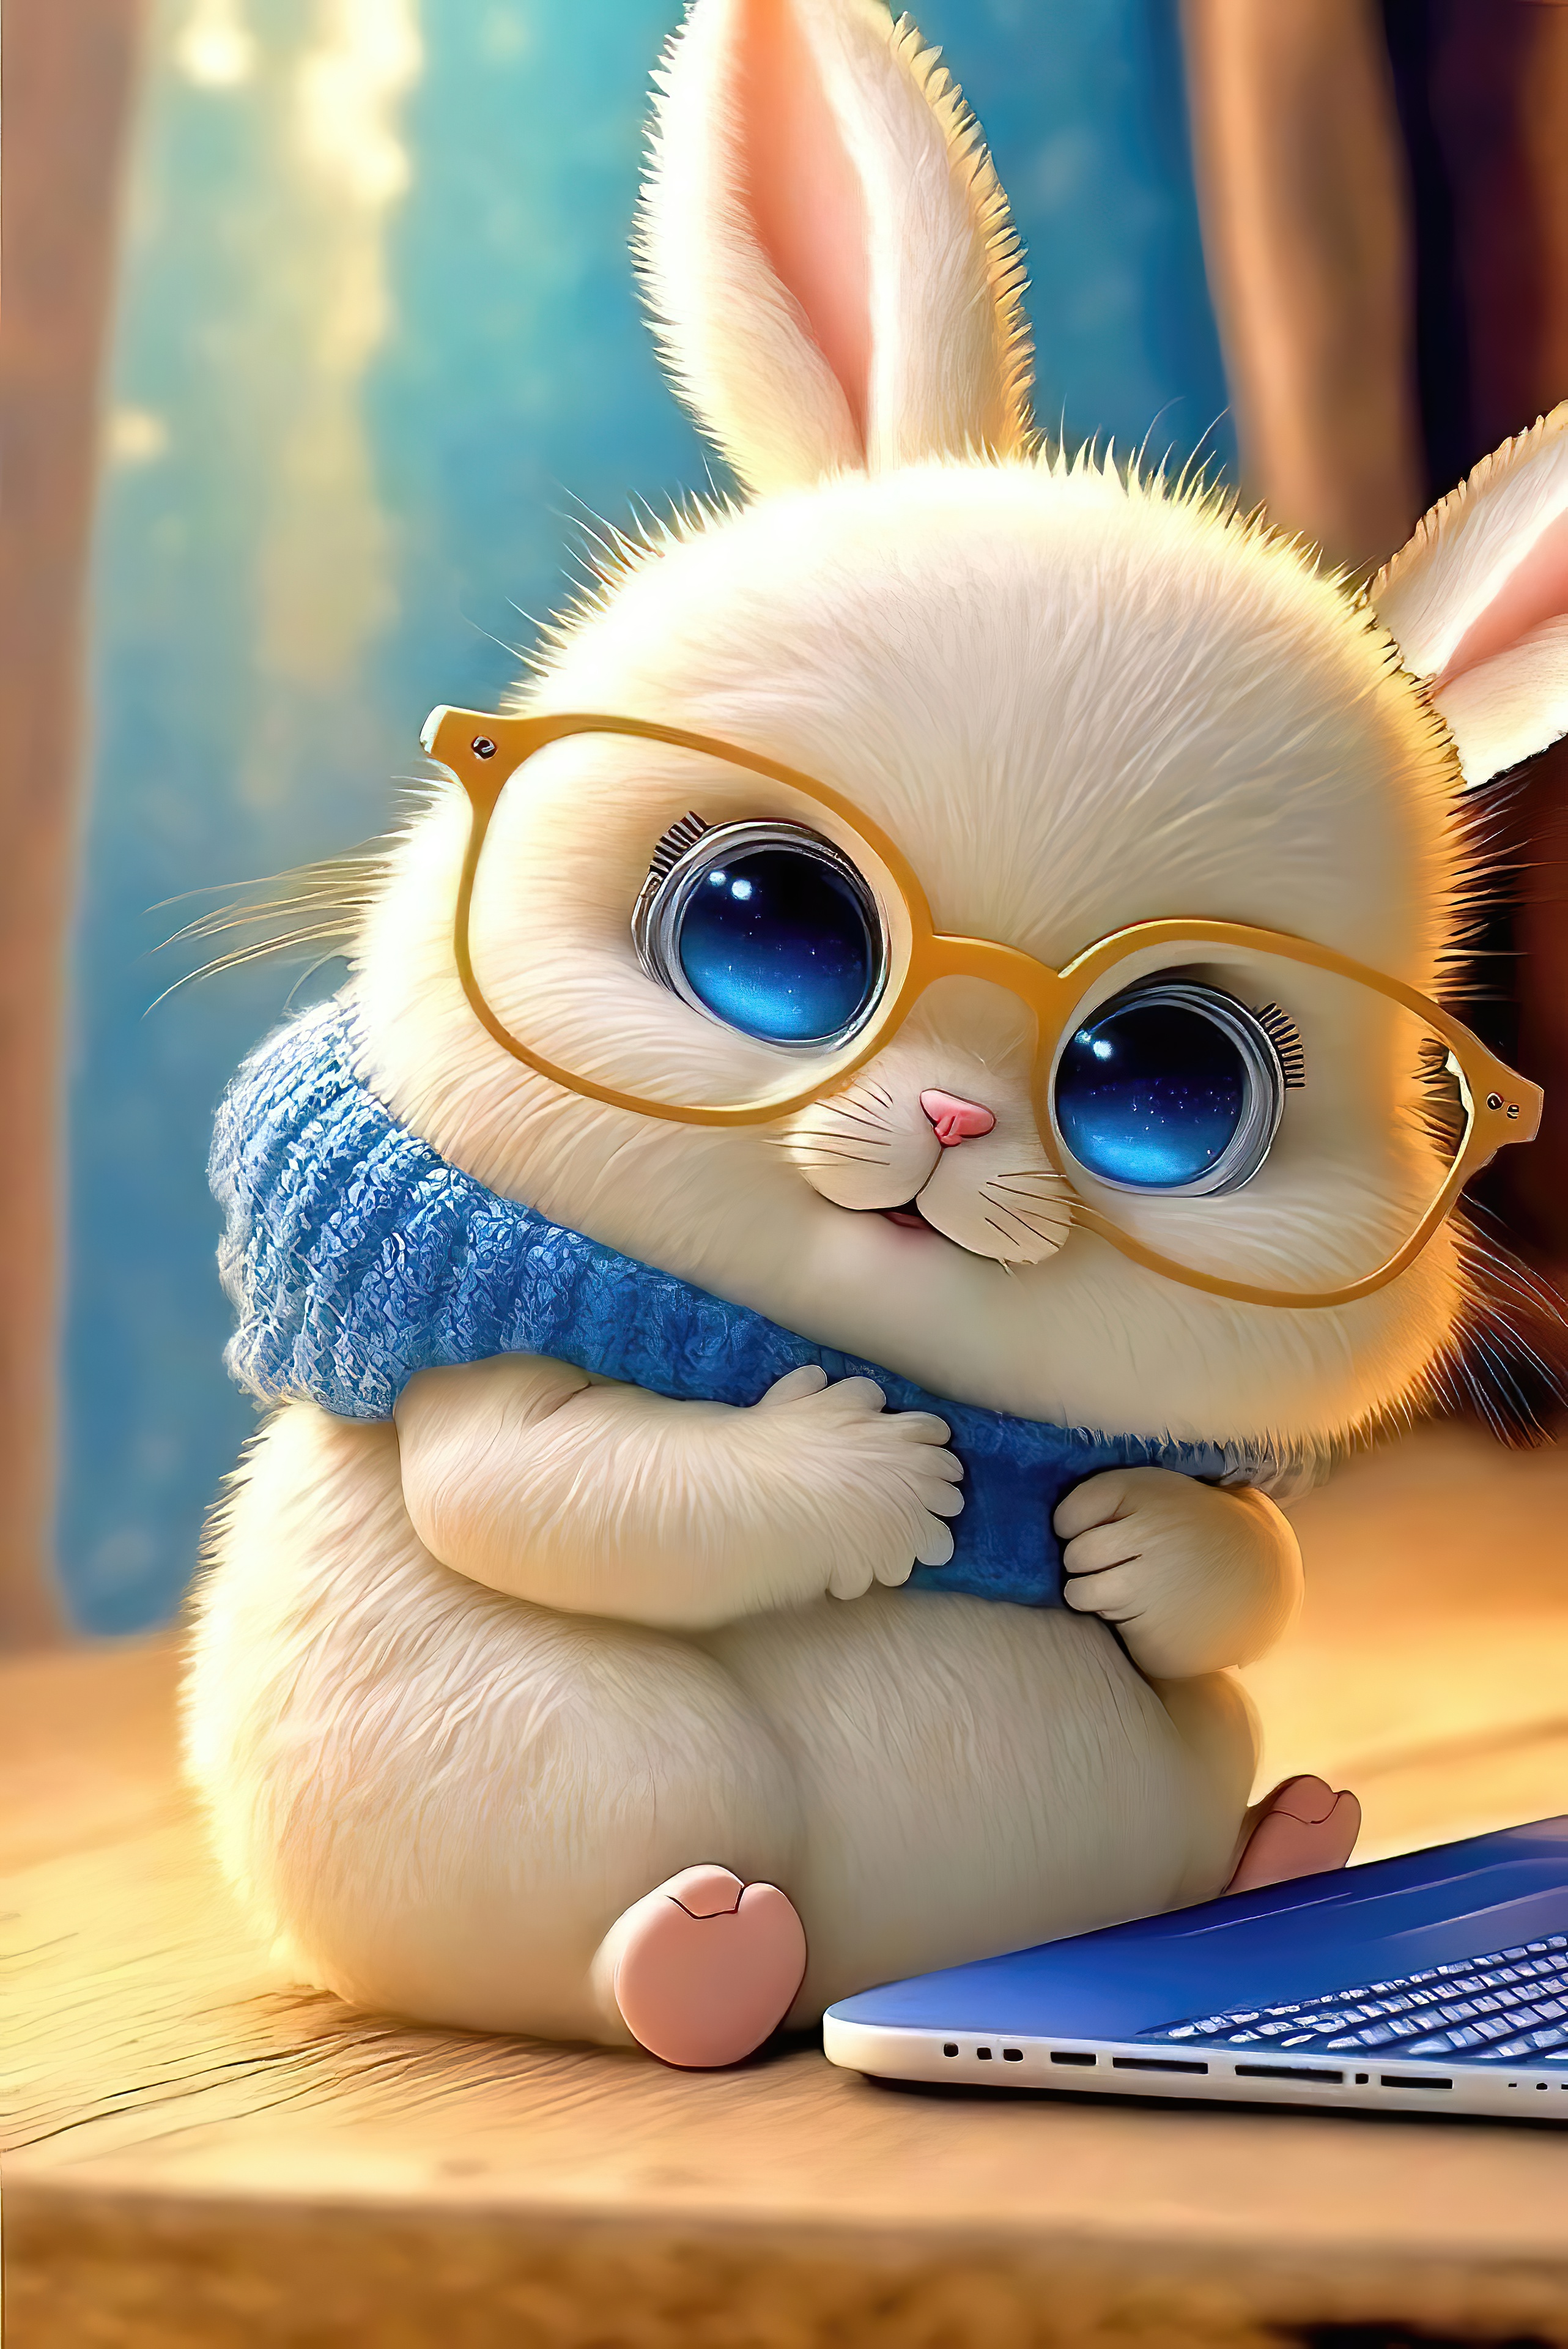 Cute bunny cartoon - Aranyos nyuszi (meserajz) - Megaport Media